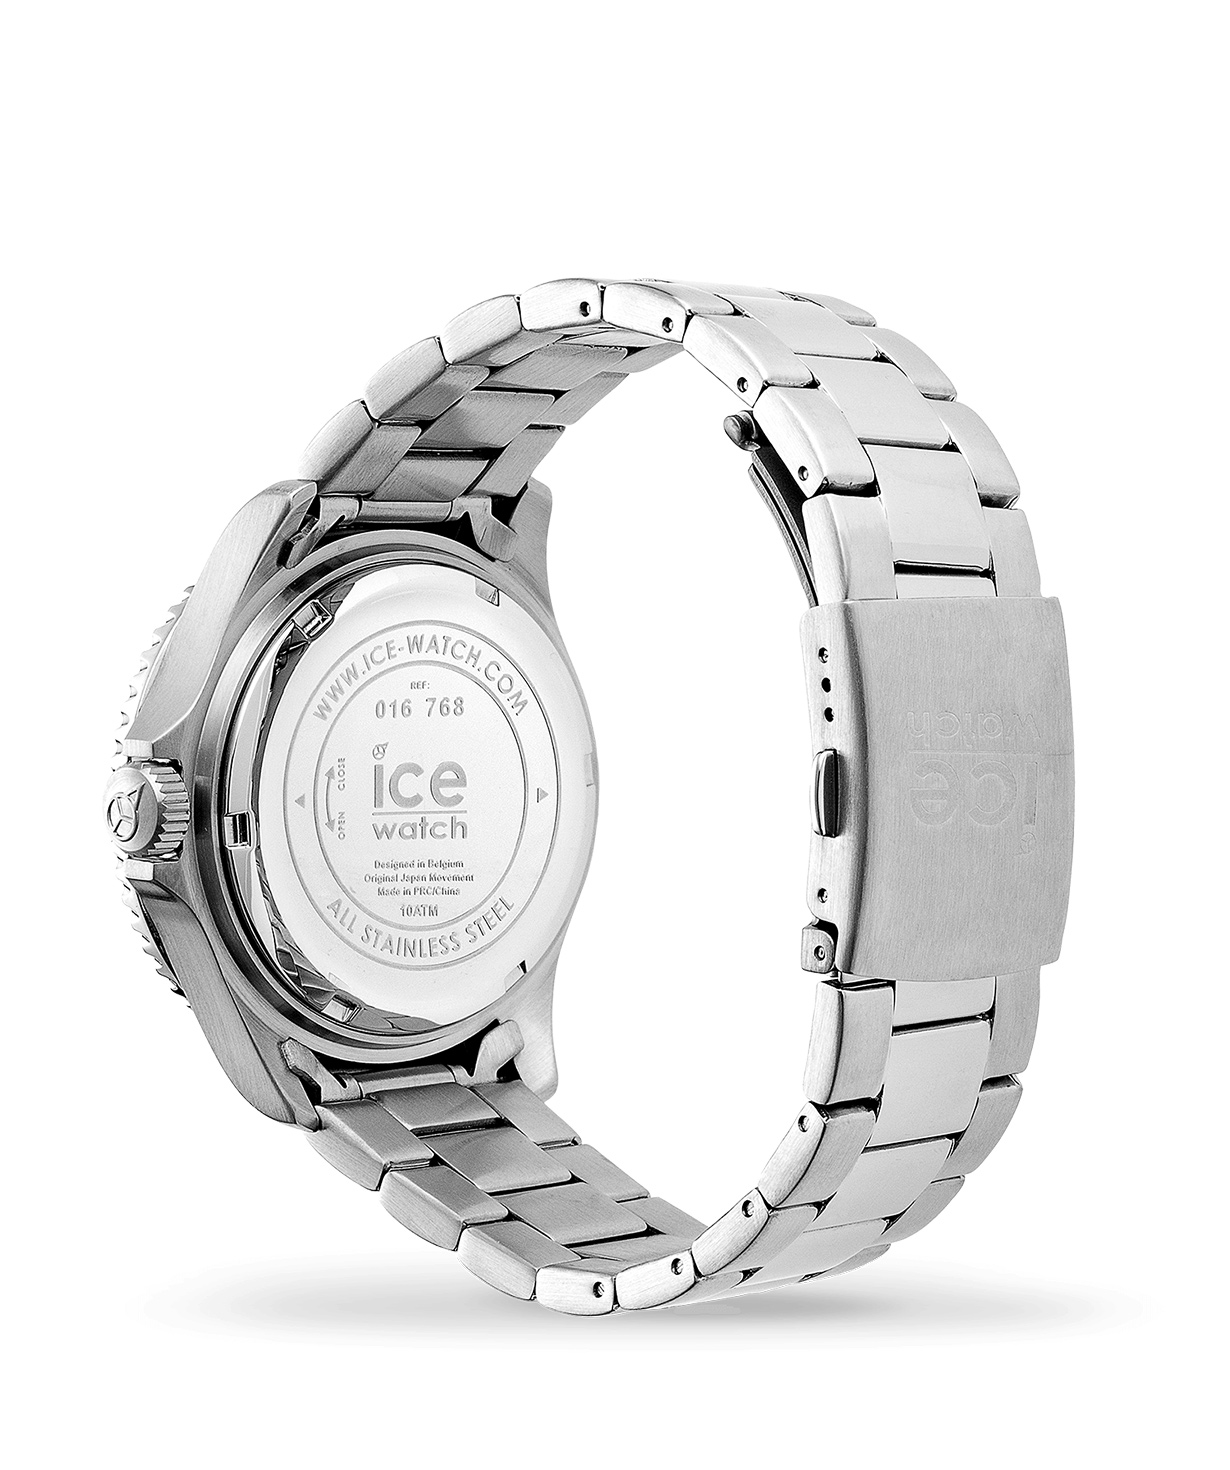 Ժամացույց «Ice-Watch» ICE steel -  Black sunset silver